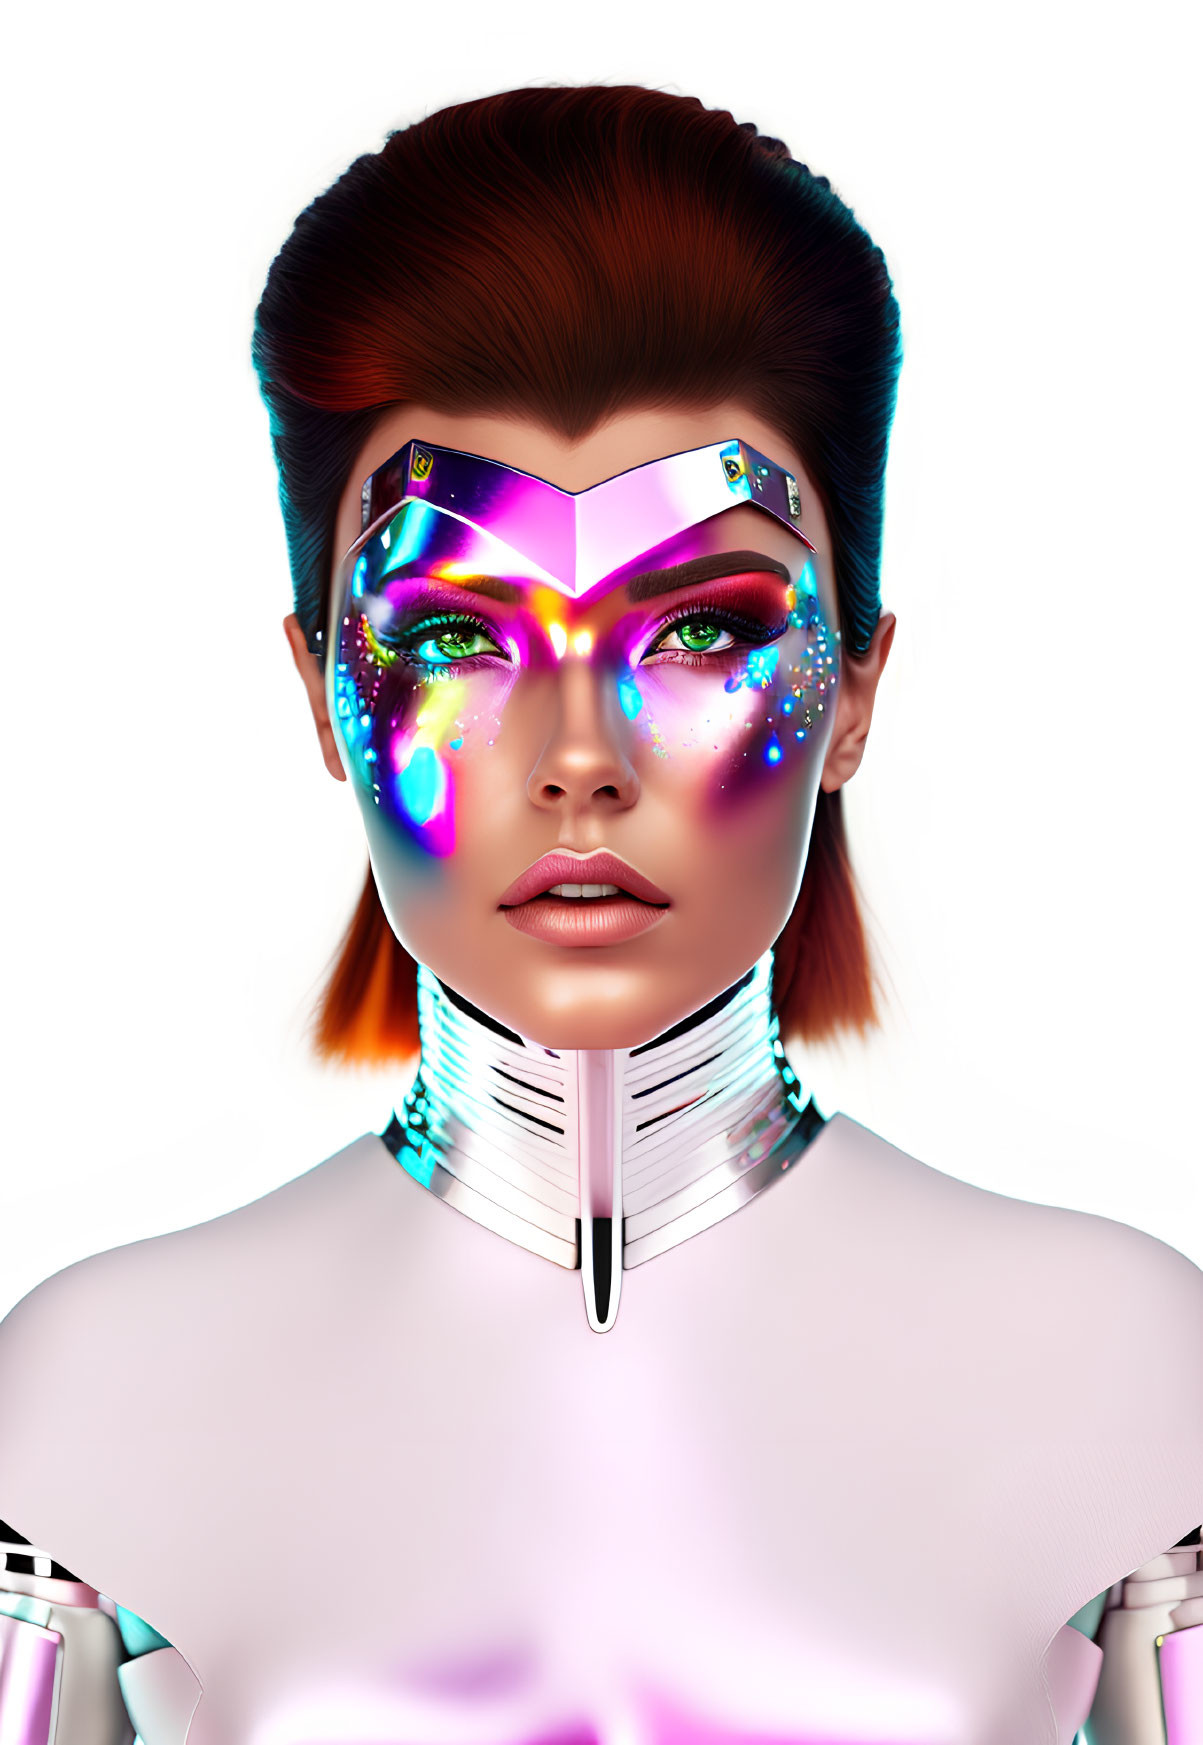 Futuristic female figure with cosmic makeup and illuminated visor